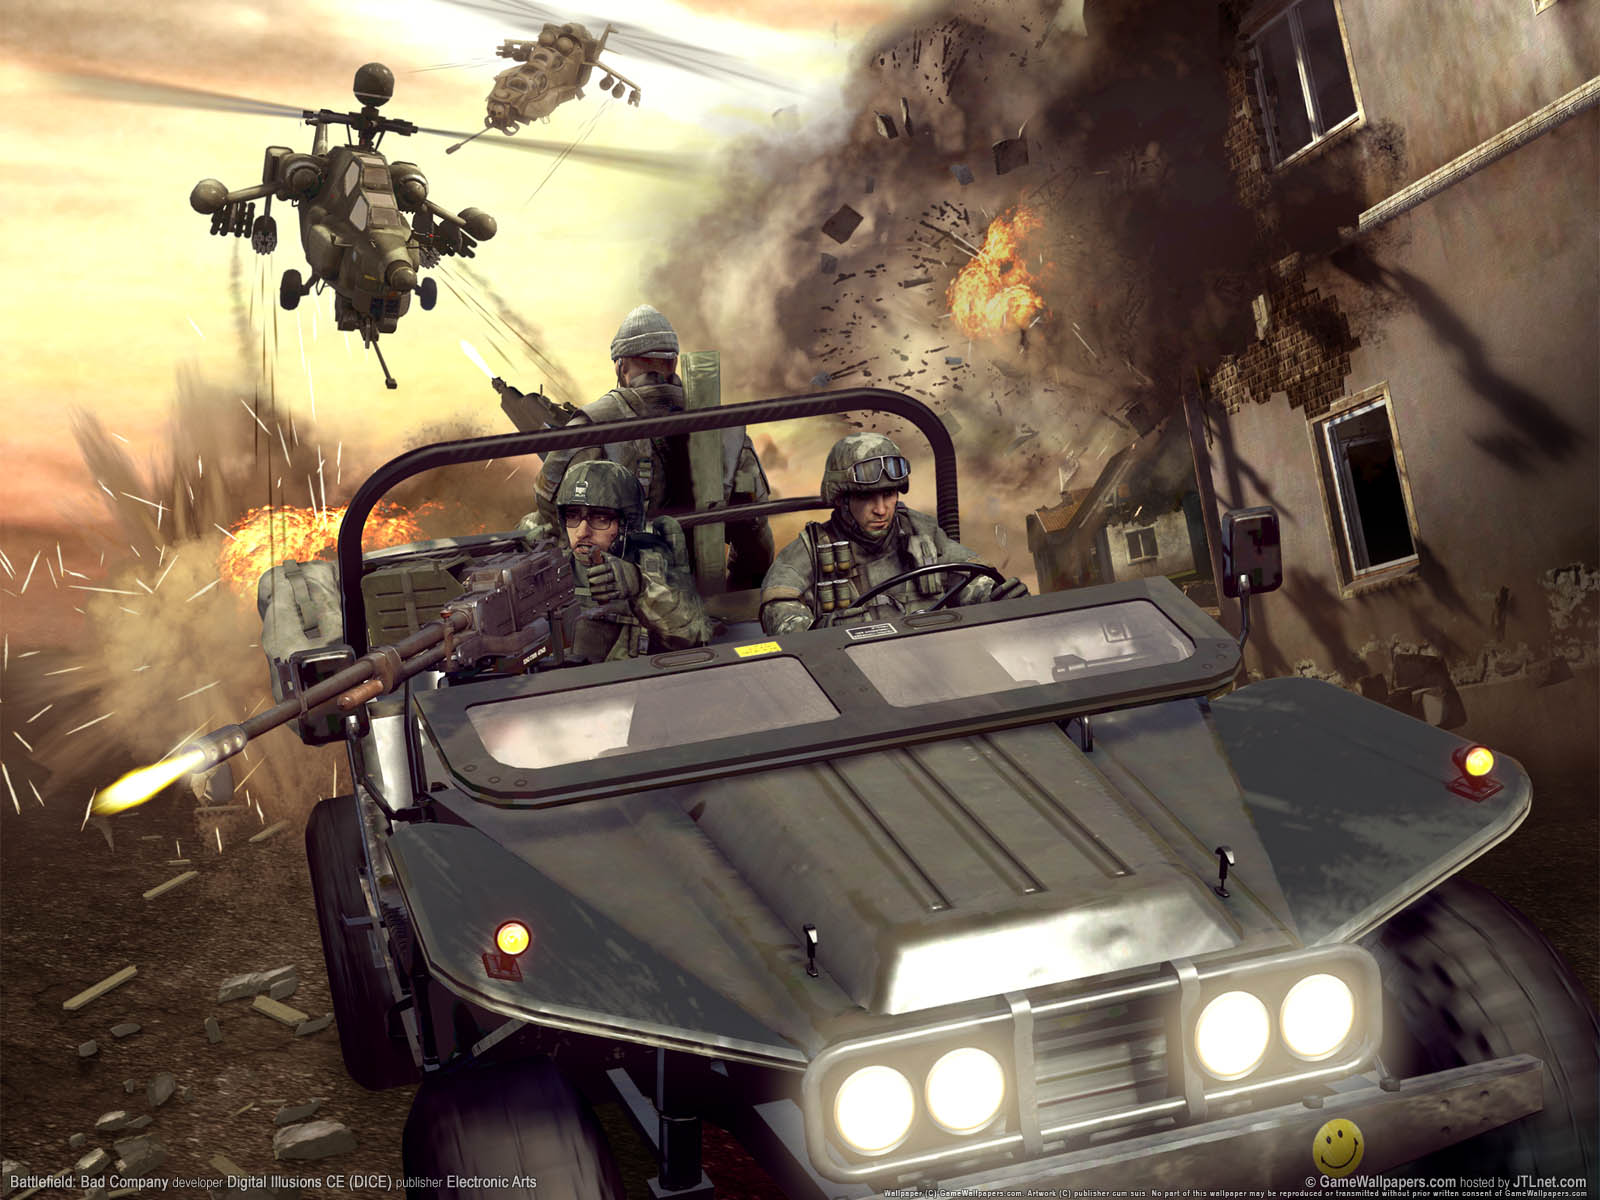 Battlefield%253A Bad Company fond d'cran 01 1600x1200